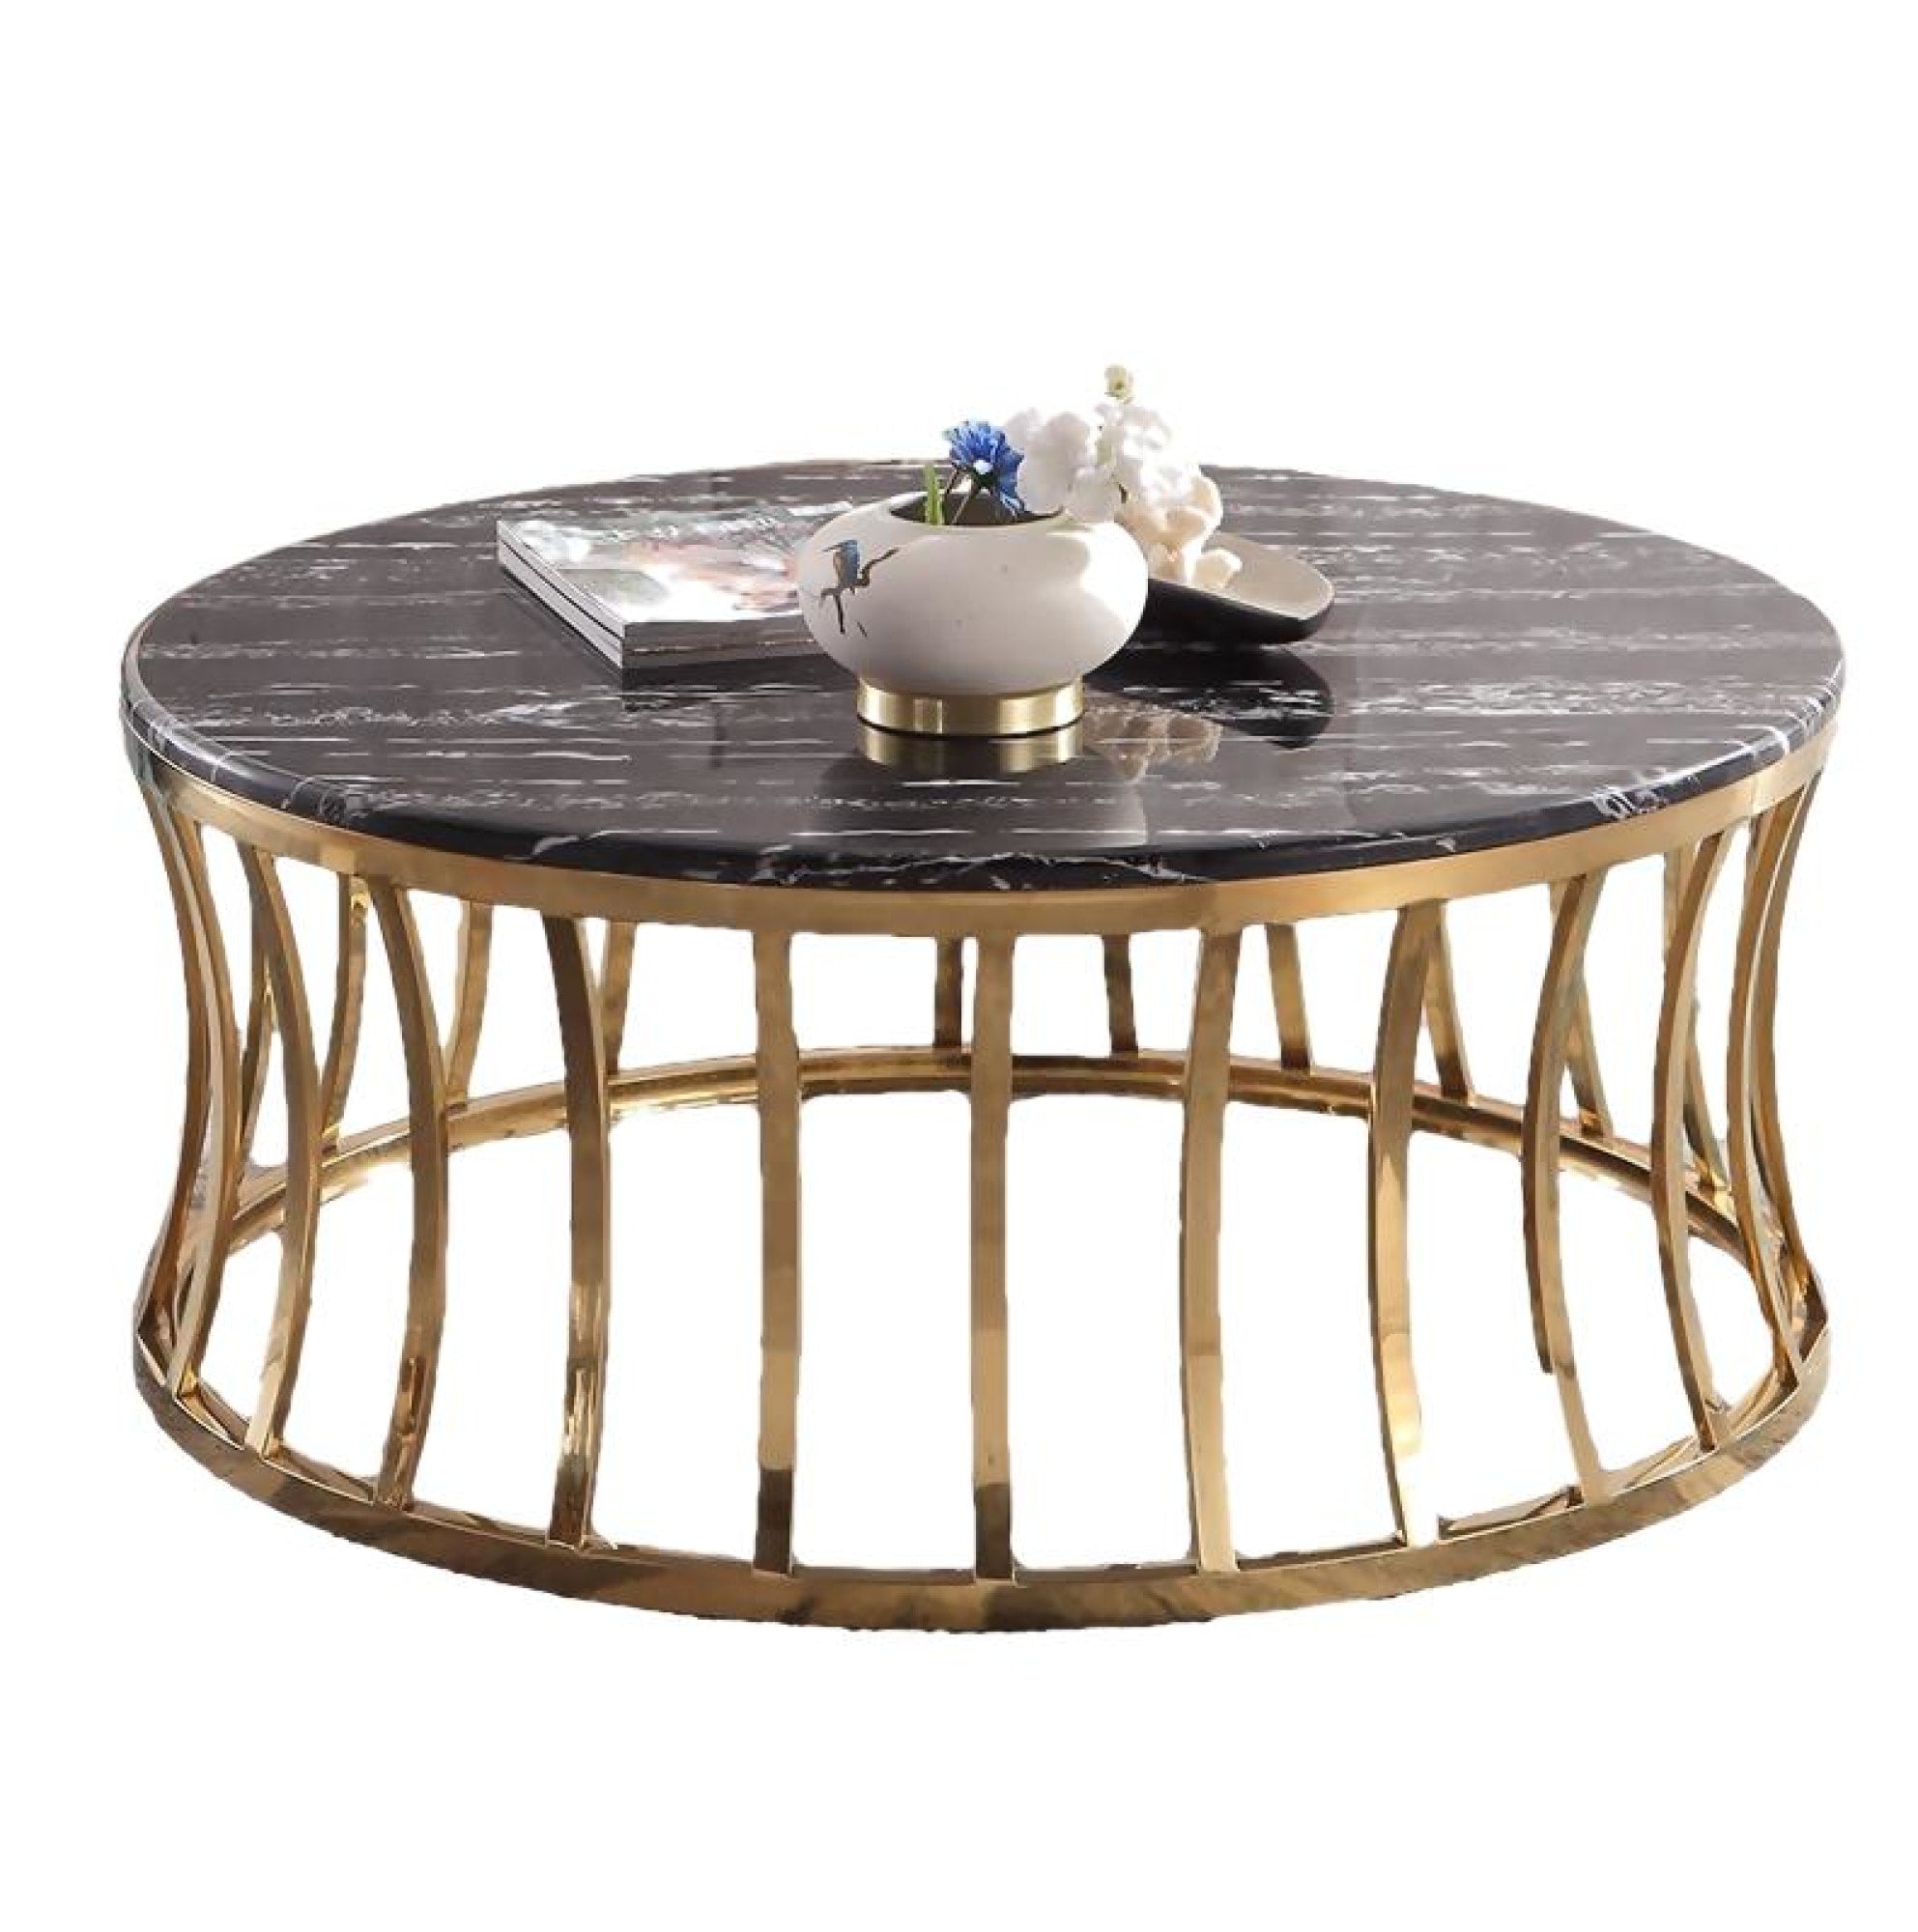 бронзовый столик с мраморной столешницей